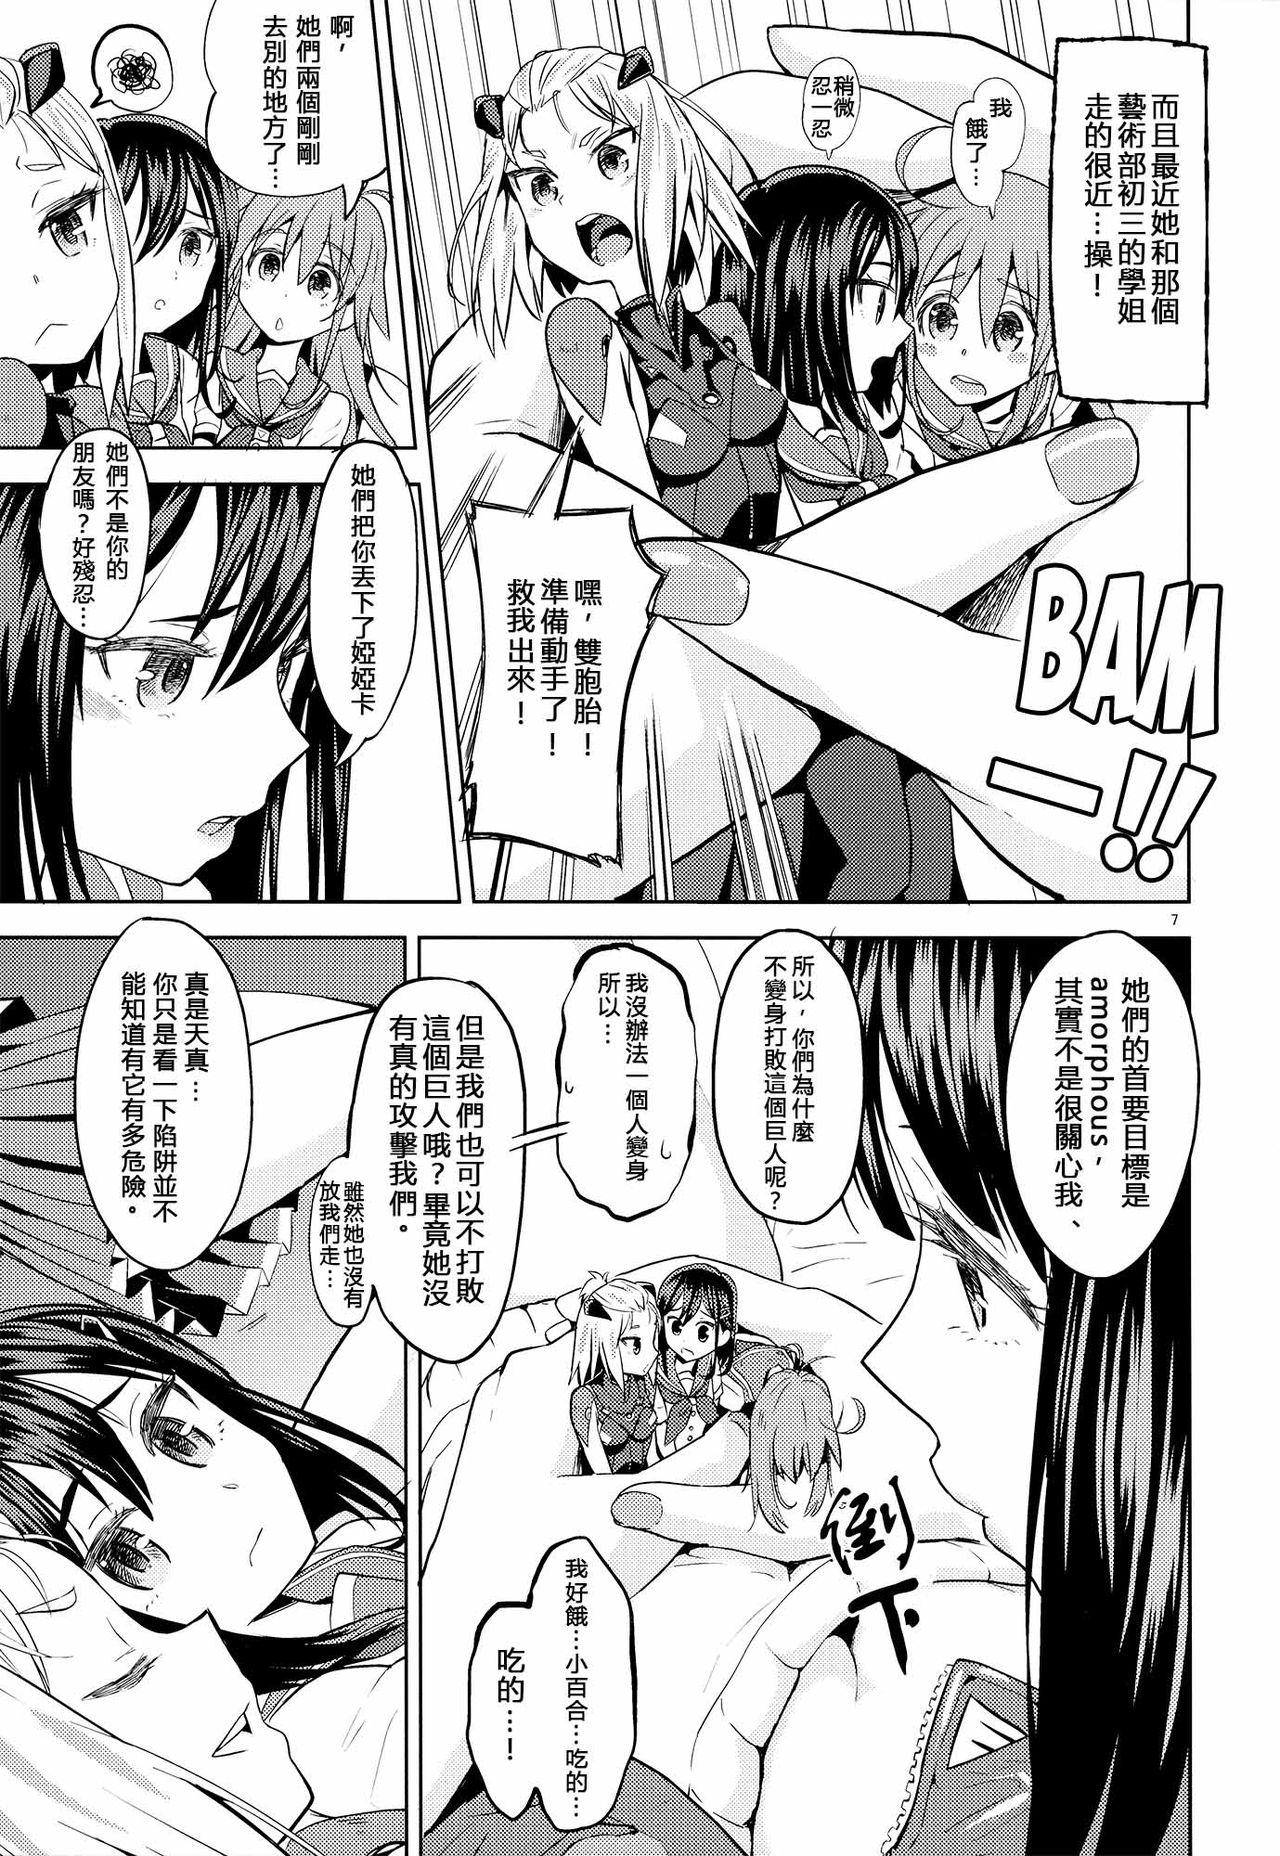 Butt Sore dakara Watashi wa Henshin Dekinai - Flip flappers Bunda Grande - Page 8